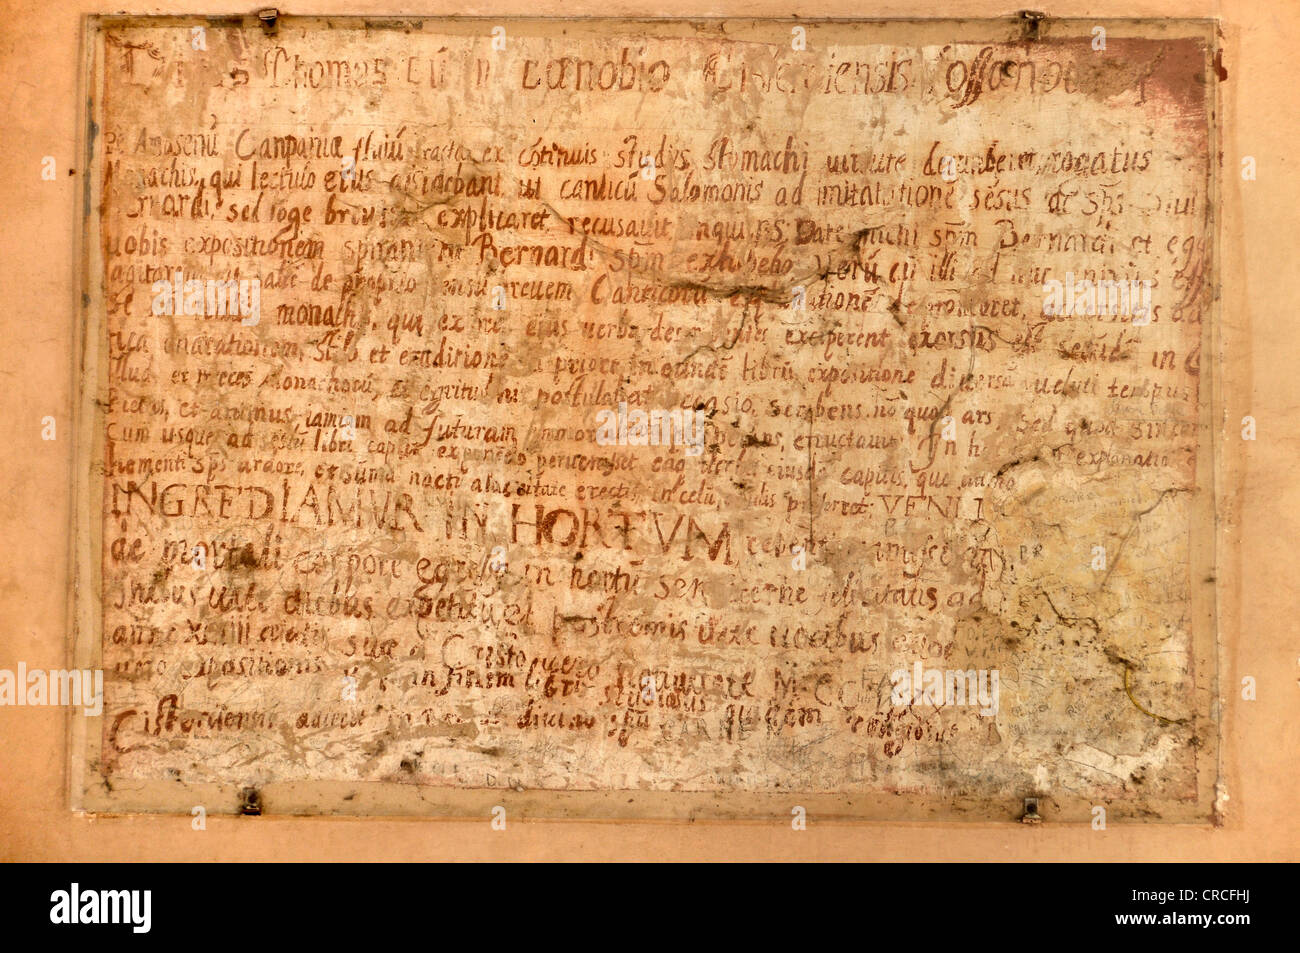 Tablet con scritto a mano il testo latino all'interno della cappella di San Tommaso d Aquino, la Casa di San Tomaso, gotica basilica di Foto Stock